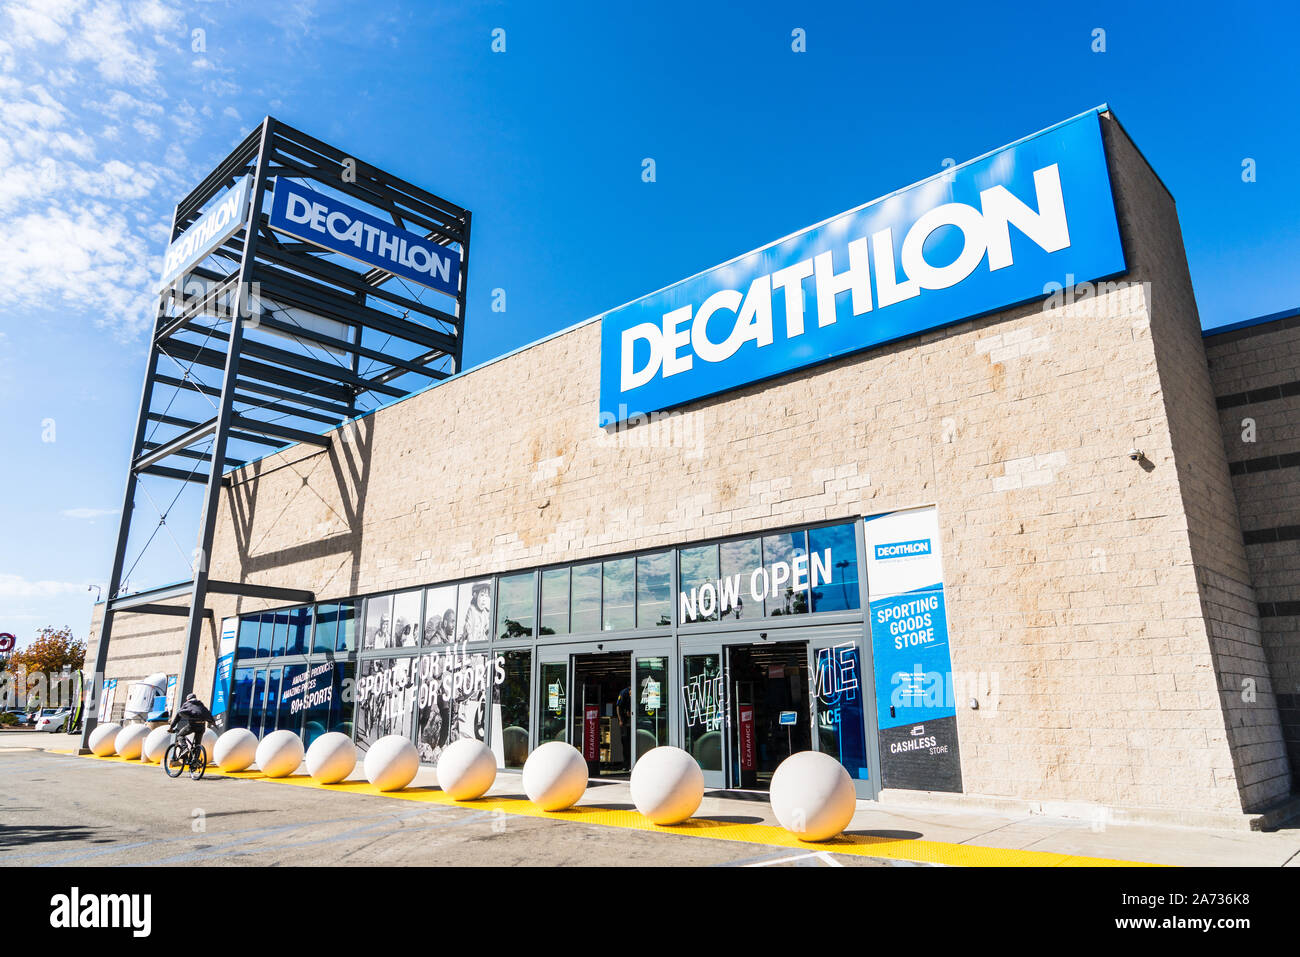 Oct 18, 2019 San Francisco Int'l / CA / USA - Vue extérieure de Decathlon Articles de sport magasin phare, le premier ouvert dans la région de la baie de San Francisco, près de Oakl Banque D'Images